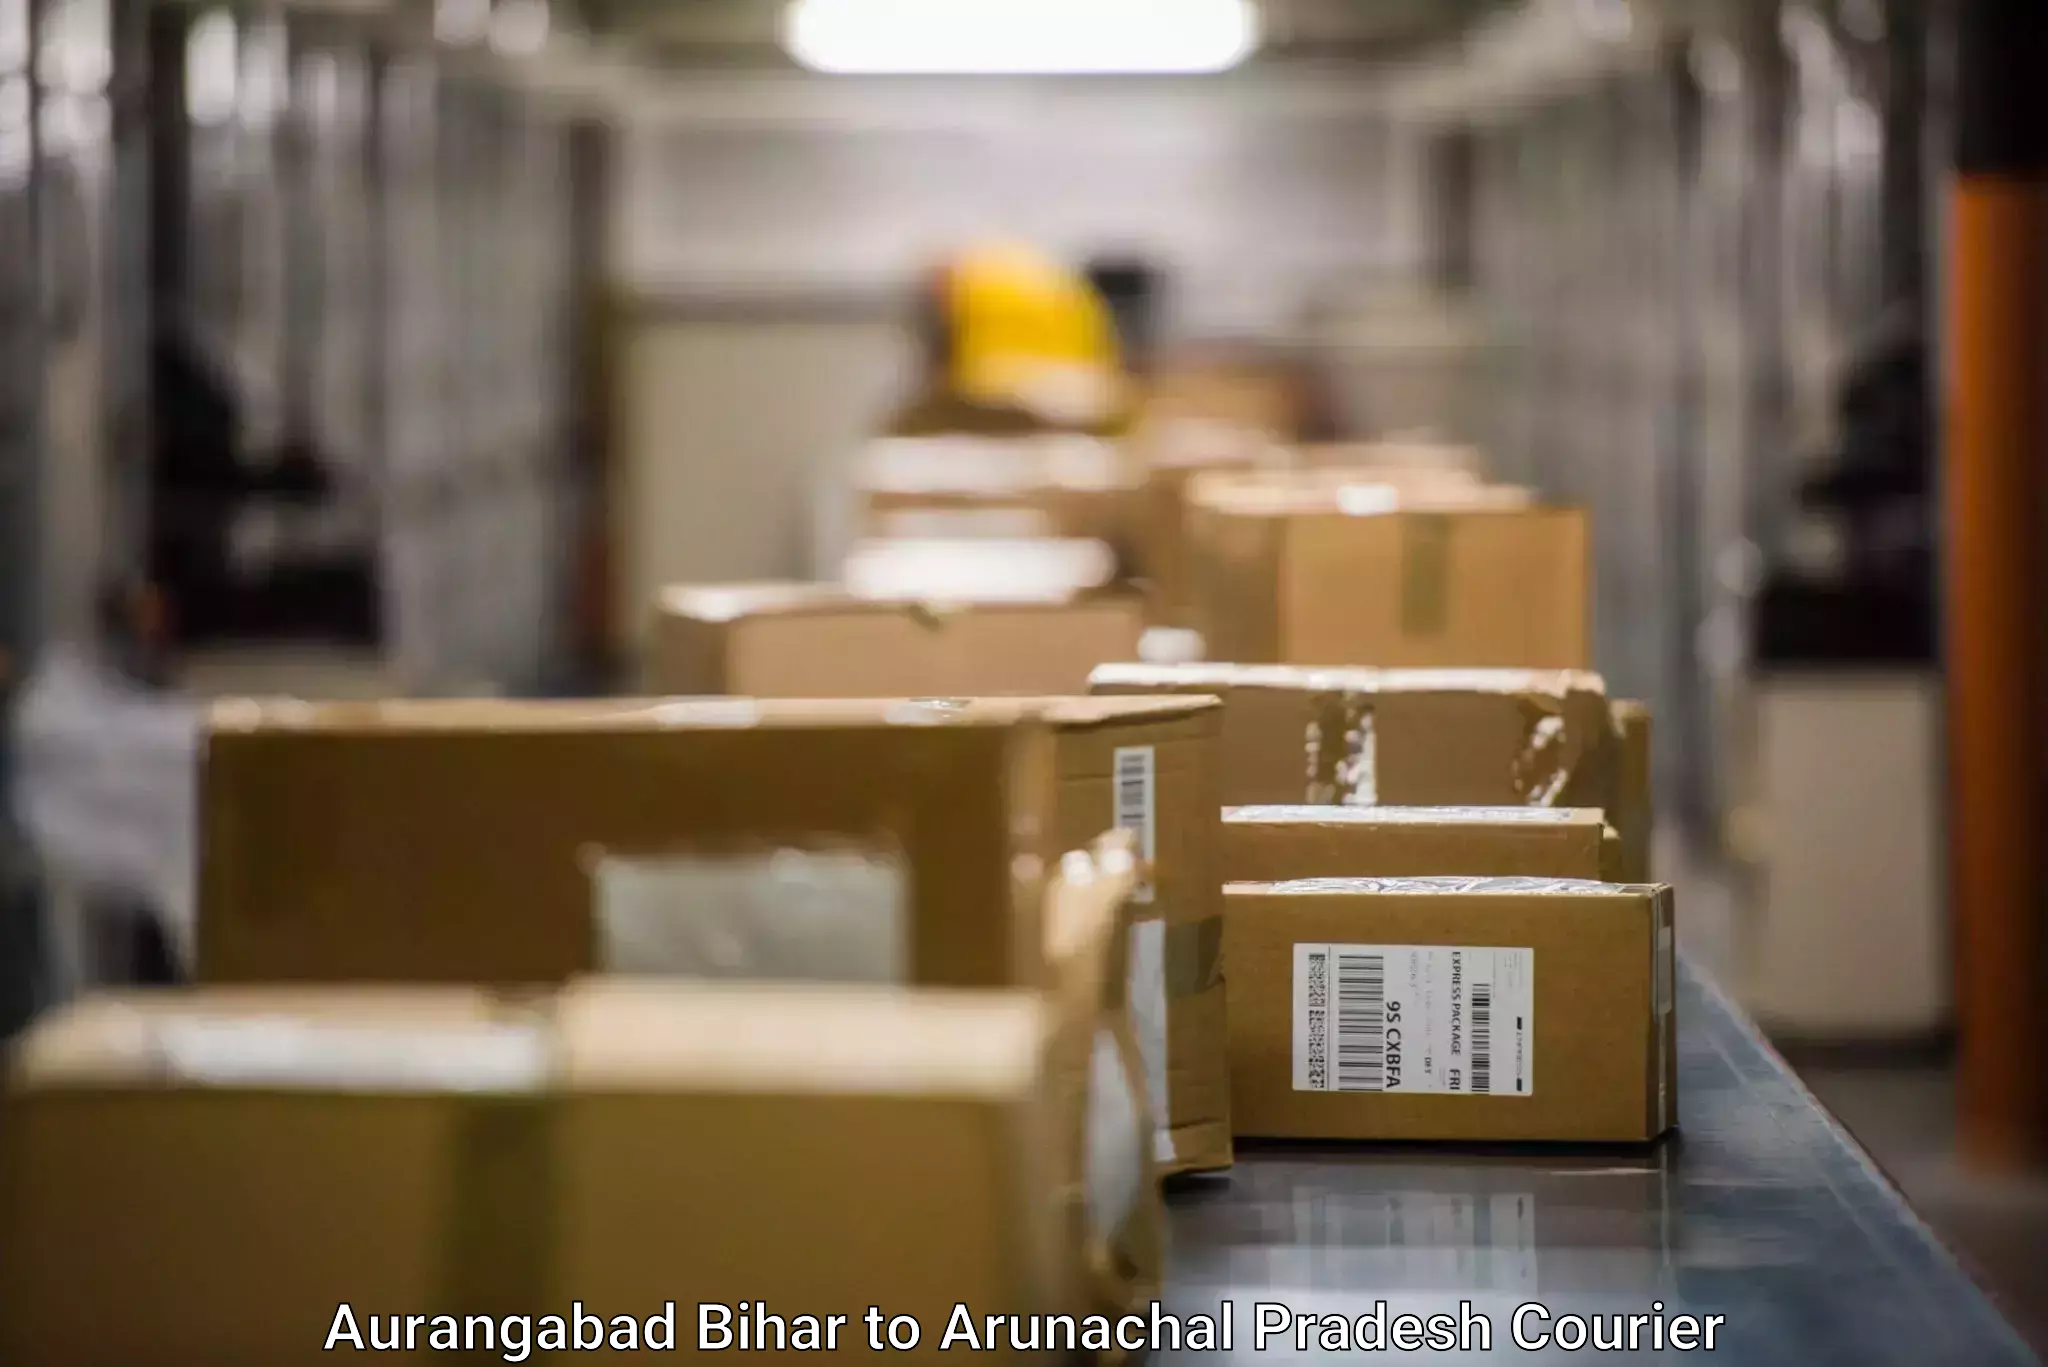 Global courier networks Aurangabad Bihar to Longding